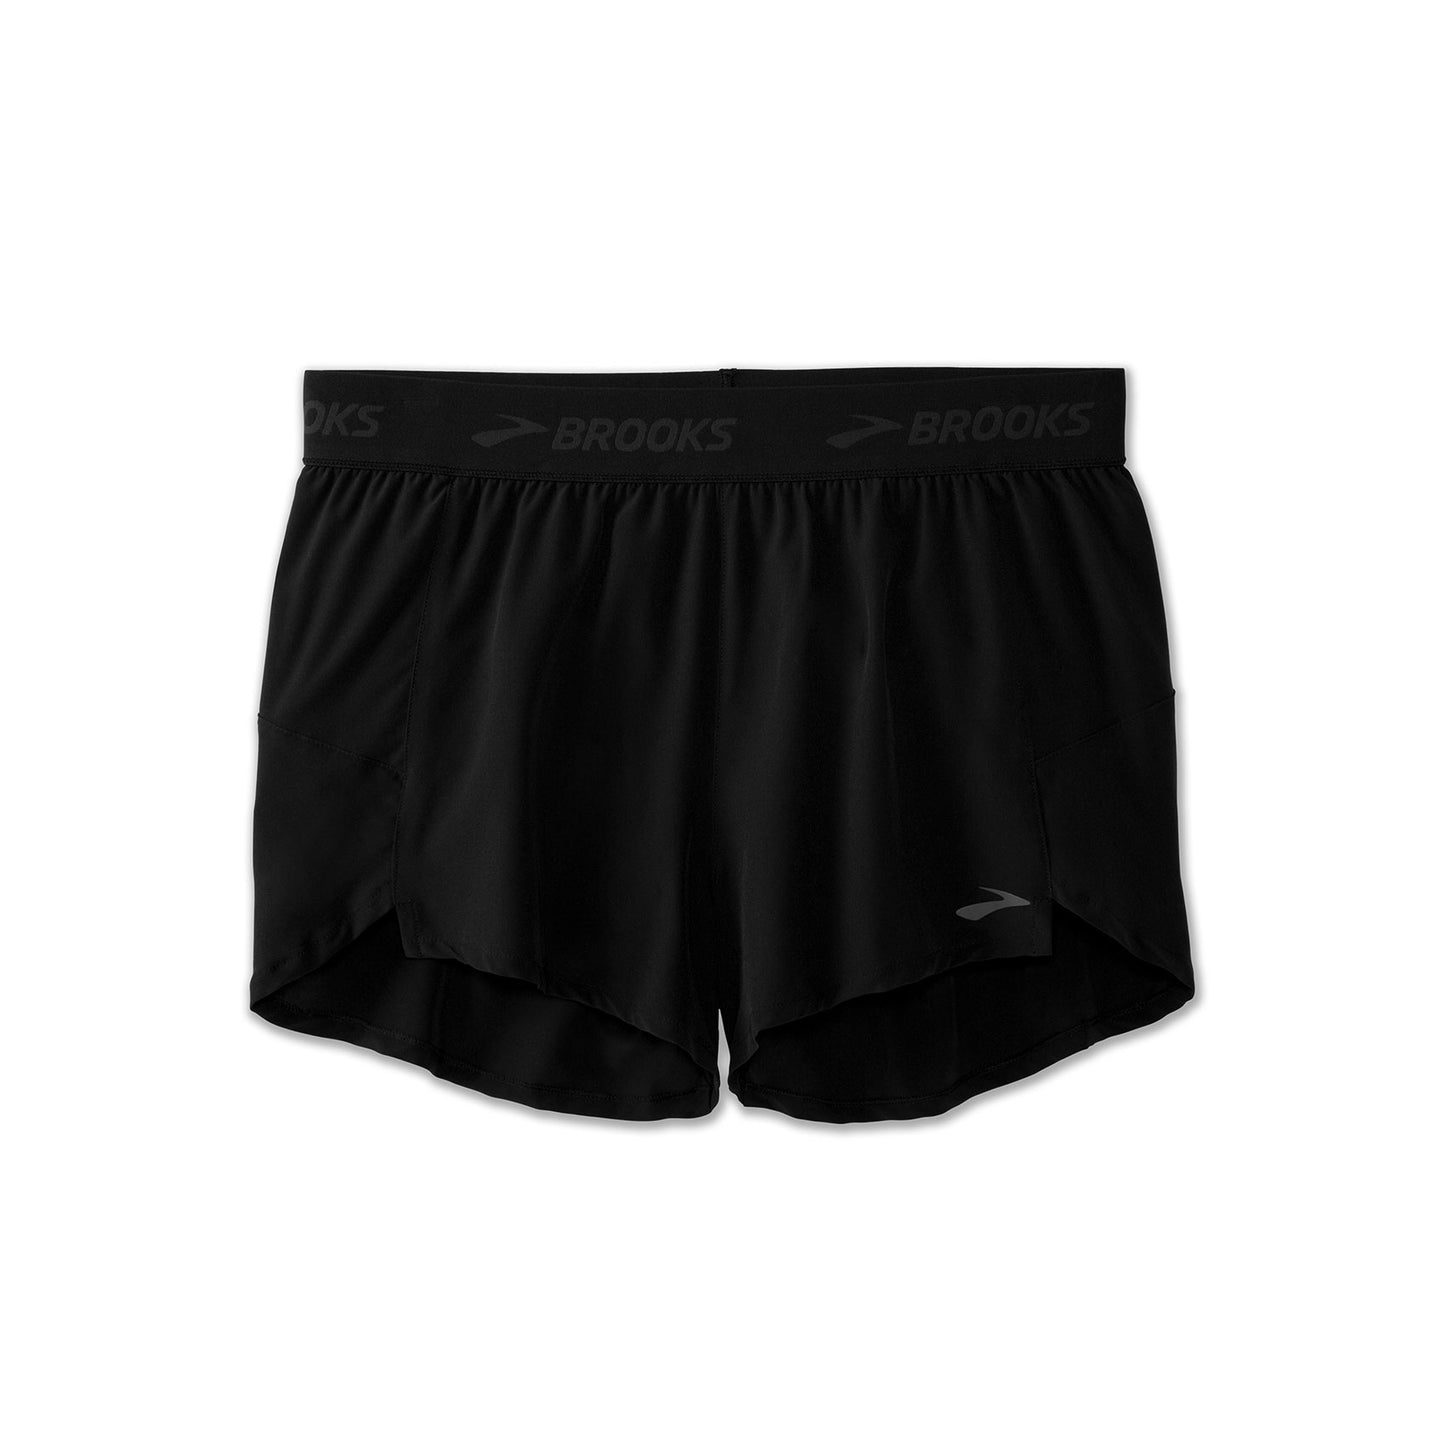 Women's Chaser 3" Shorts - Black/Brooks